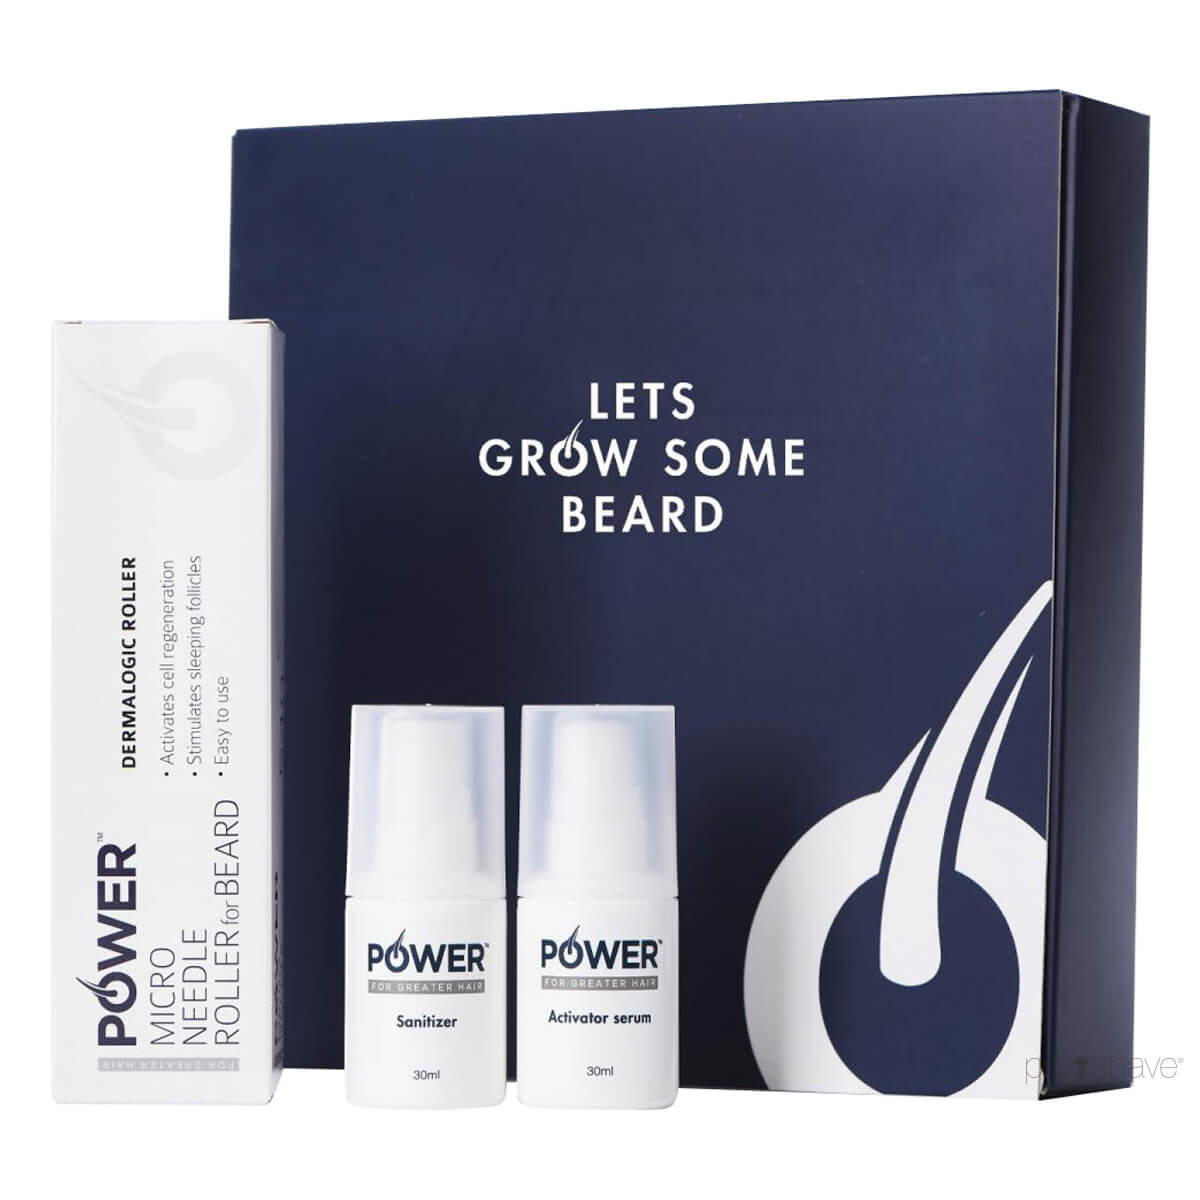 Billede af POWER Beard Growth Kit